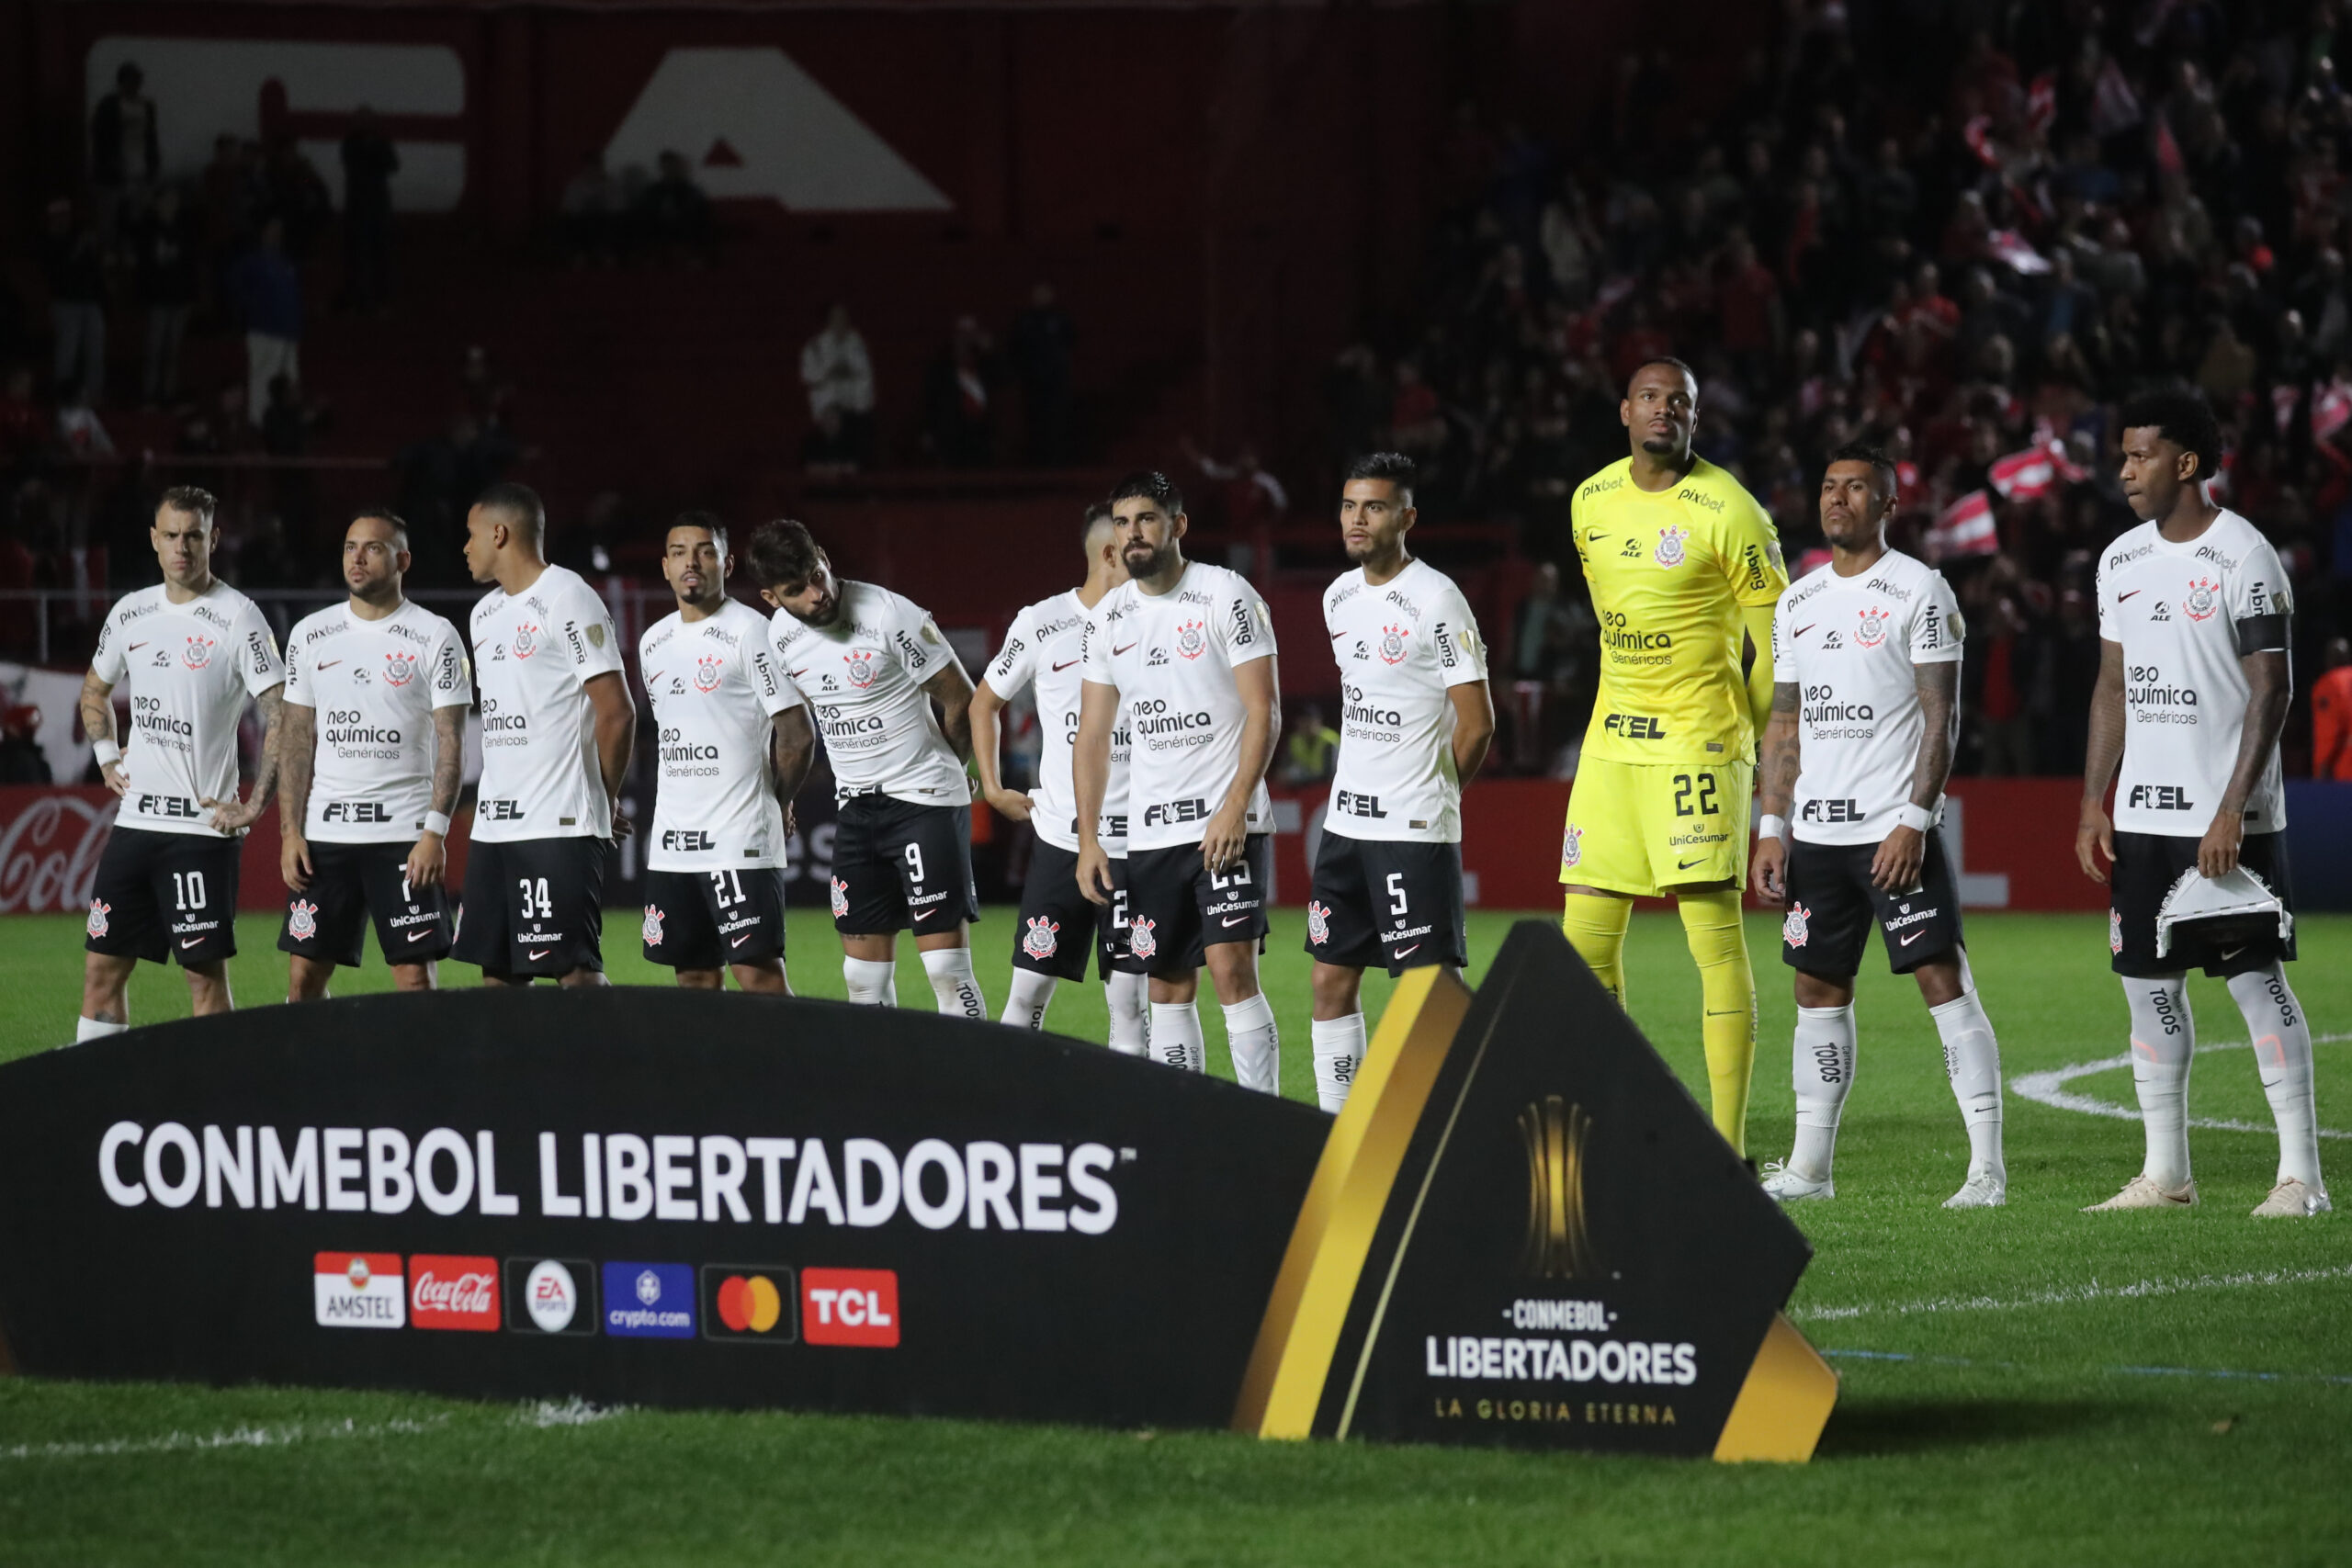 Em jogo movimentado, Corinthians vence Pato Basquete no NBB